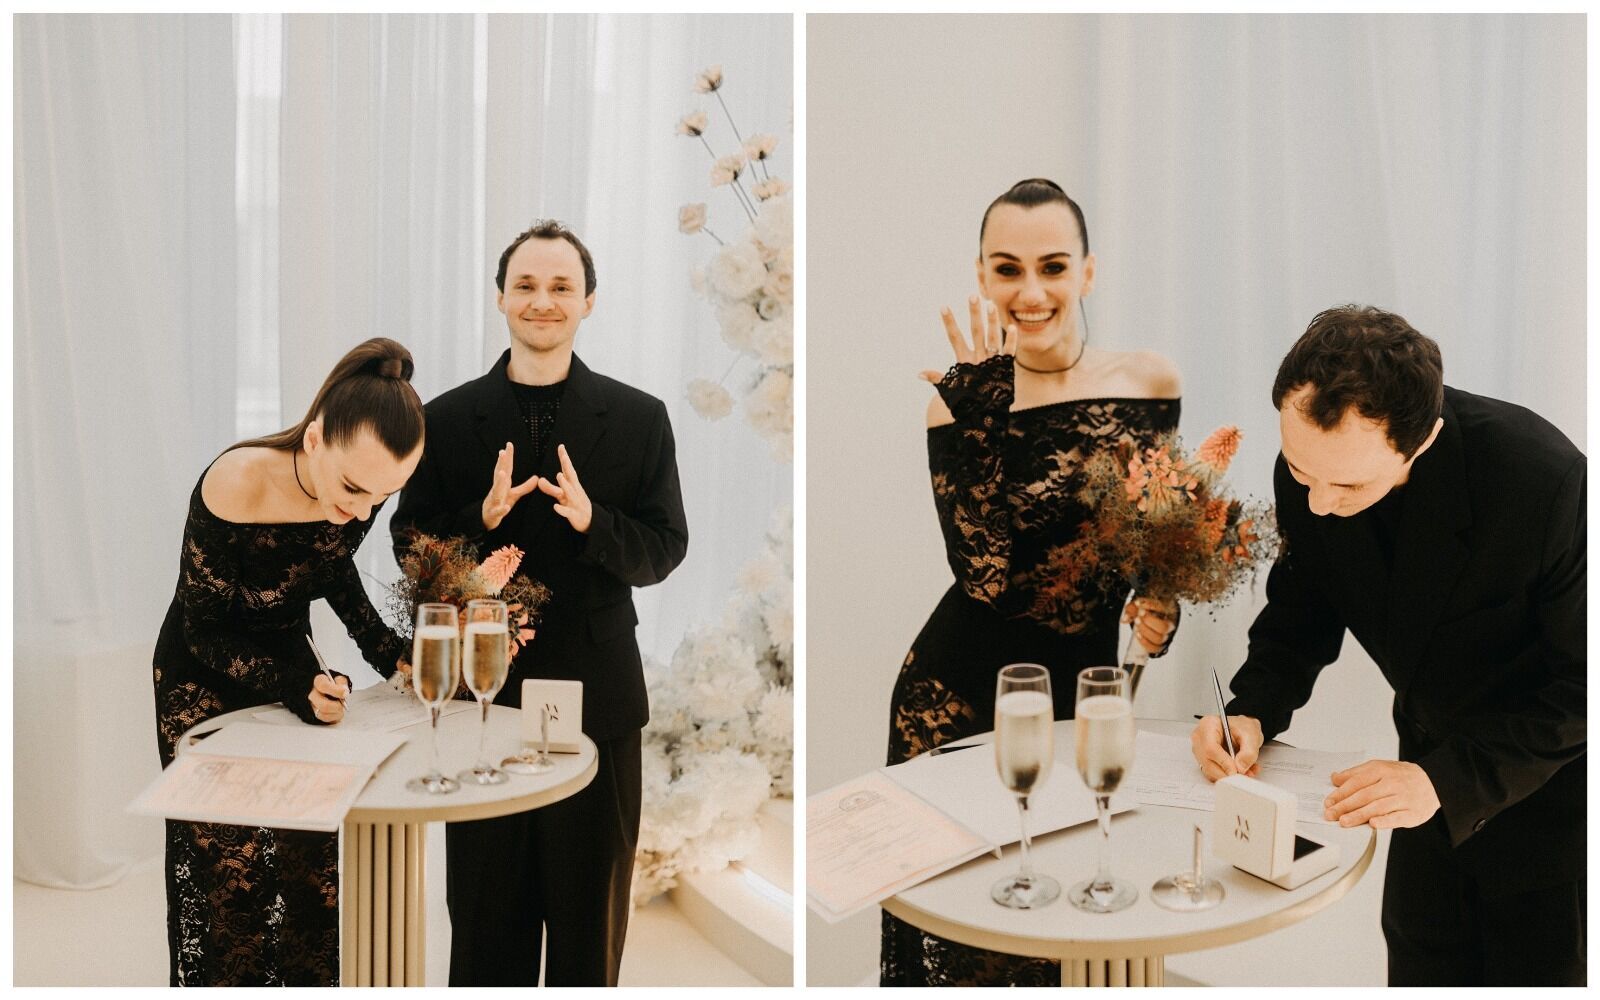 Звезда сериала "Будиночок на щастя" Константин Войтенко второй раз женился: невеста была в черном прозрачном платье. Фото